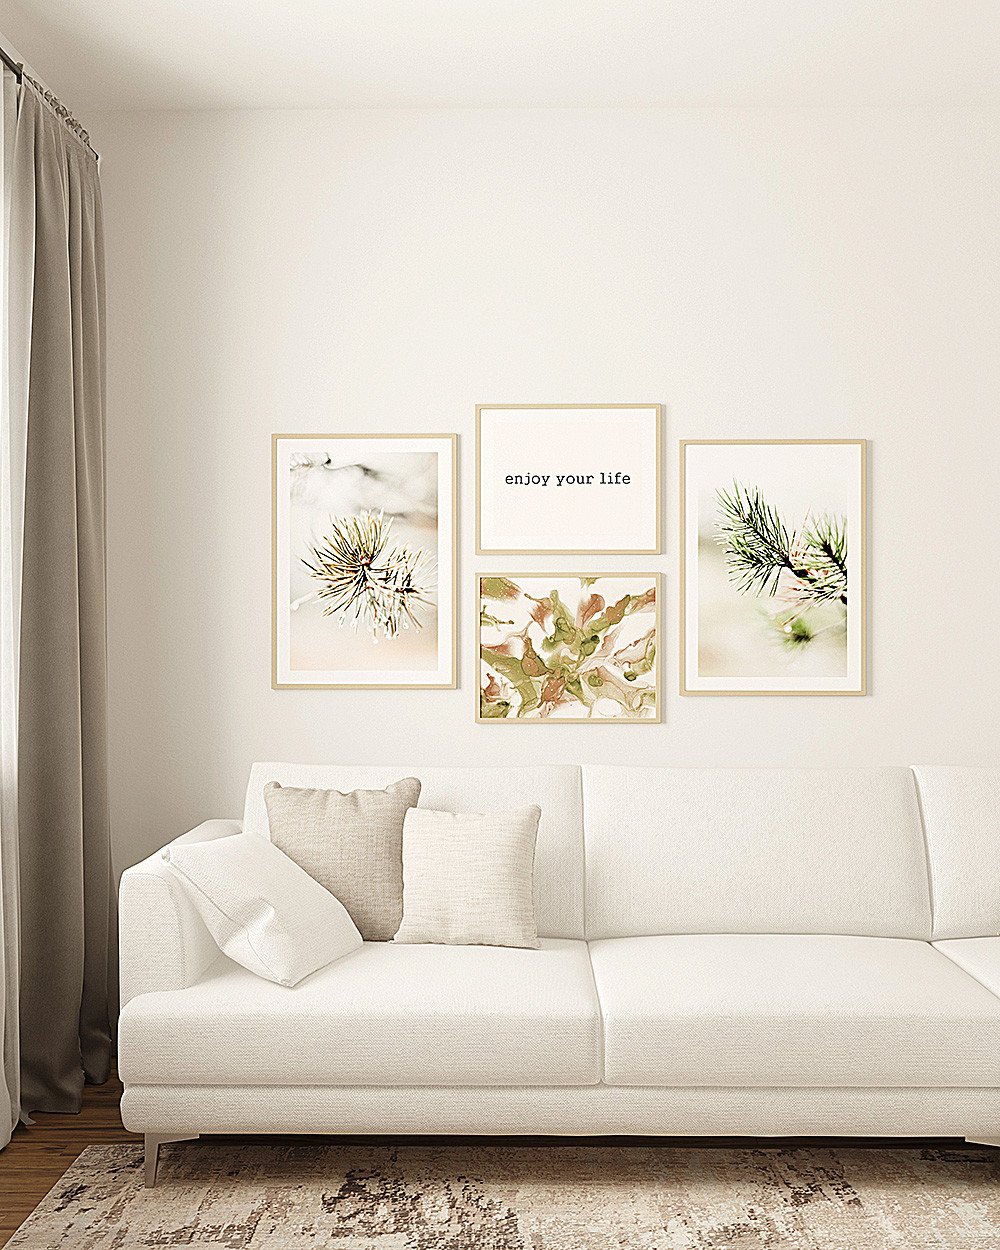 Картина диван. Постеры для интерьера. Постеры над диваном. Постеры над диваном в гостиной. Постеры в интерьере гостиной над диваном.